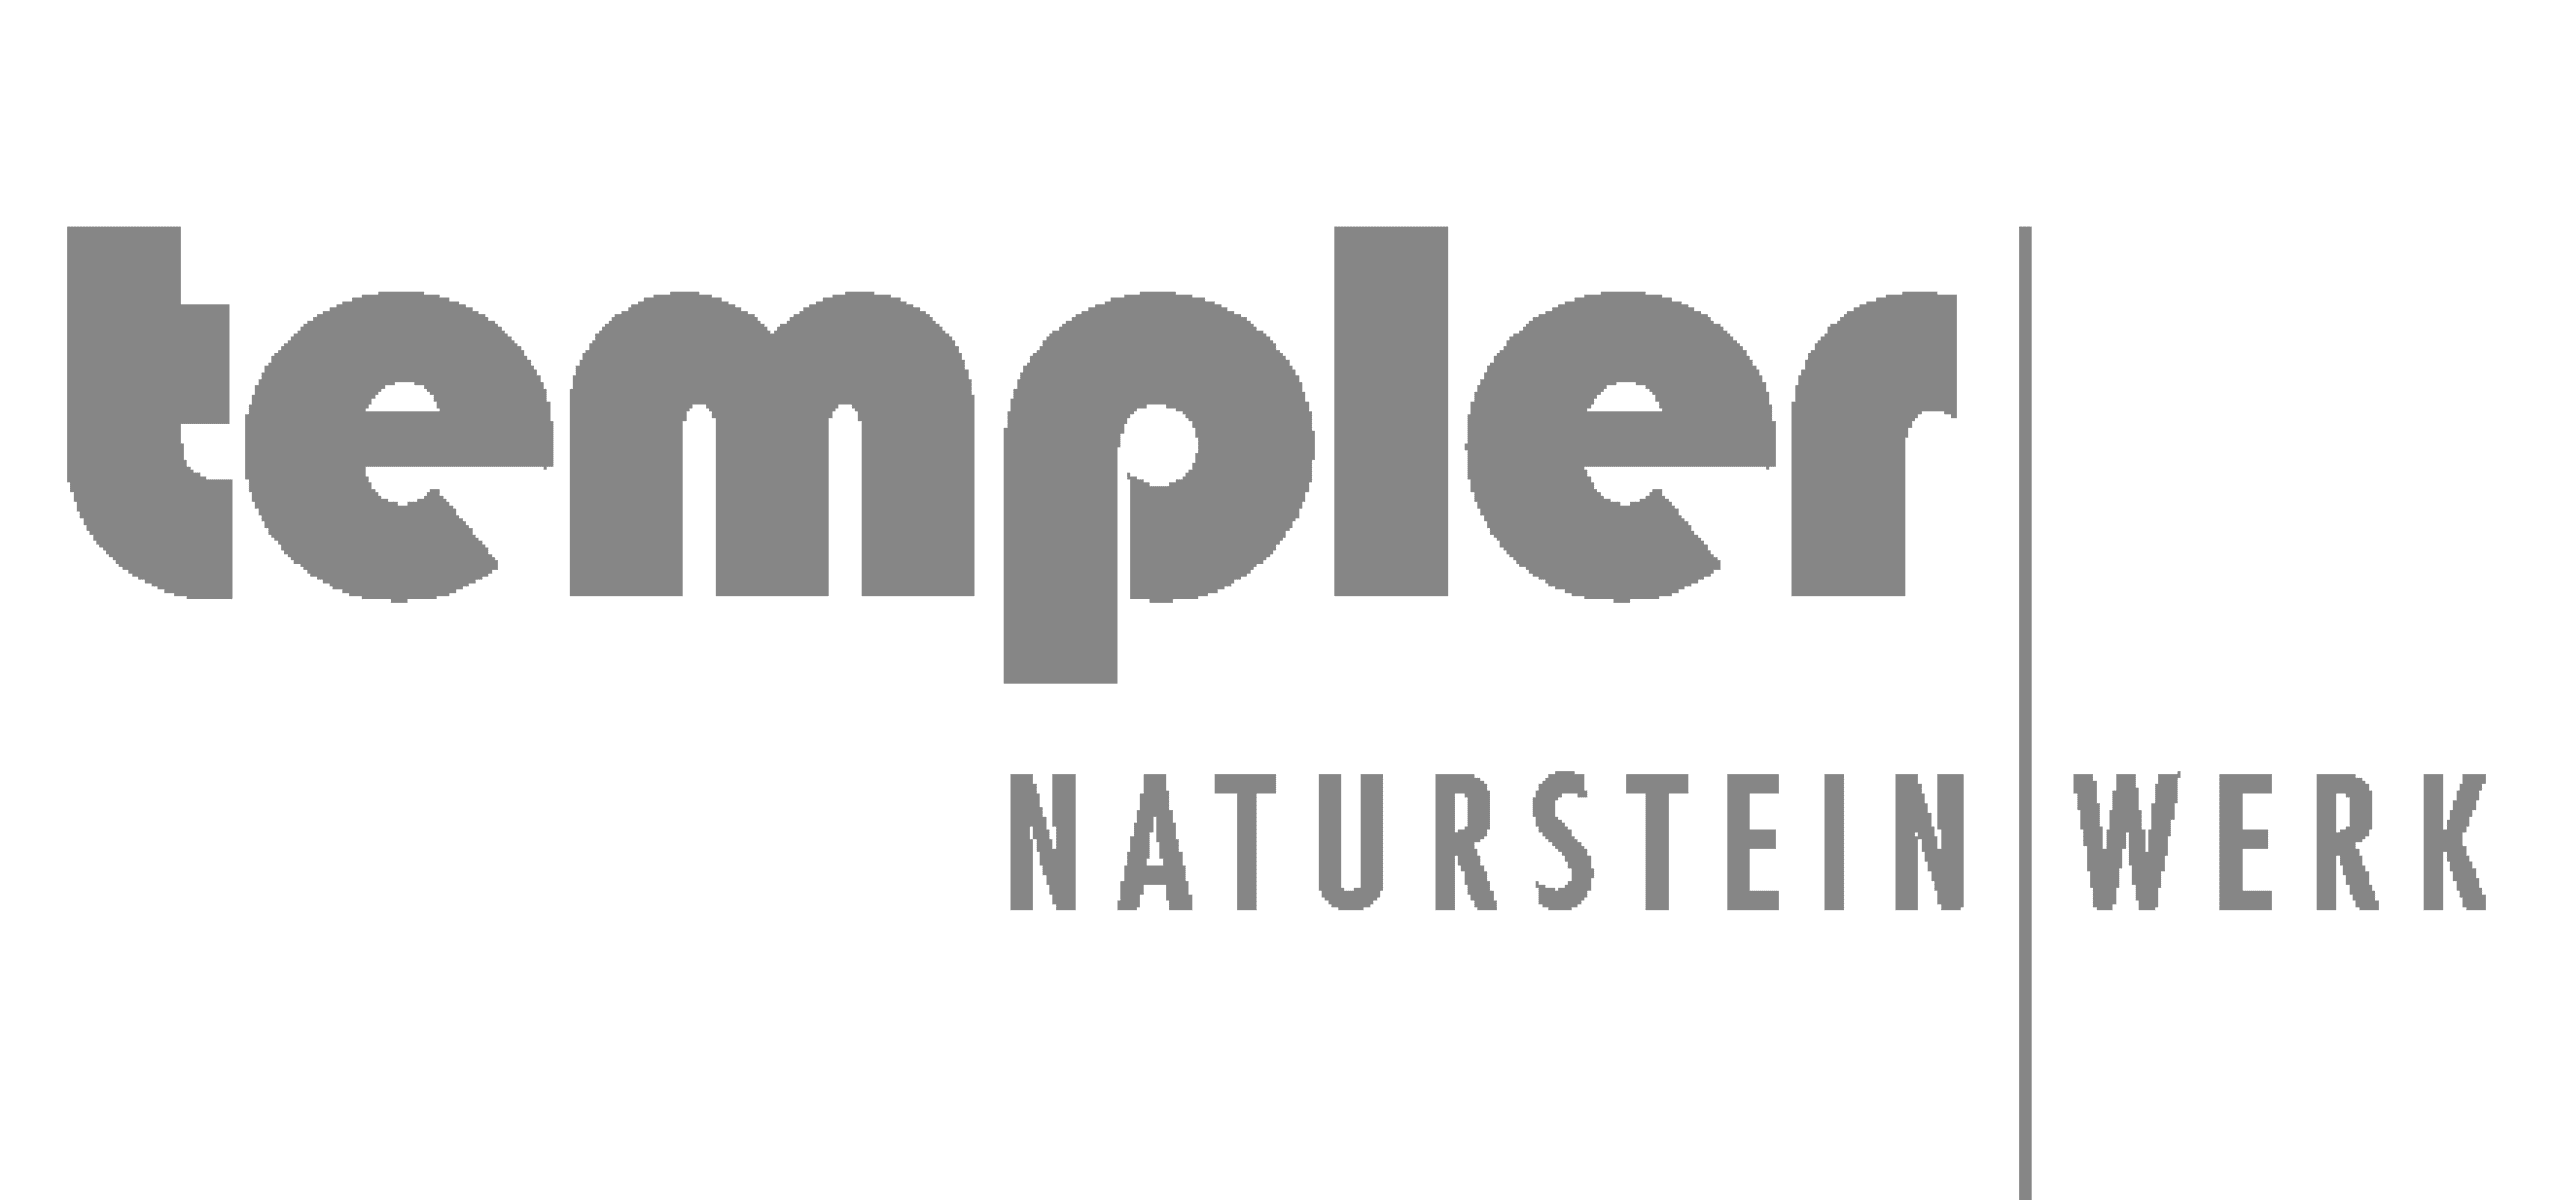 Küchenstudio Logo der Templer Natursteinwoche in Stuhr-Brinkum.